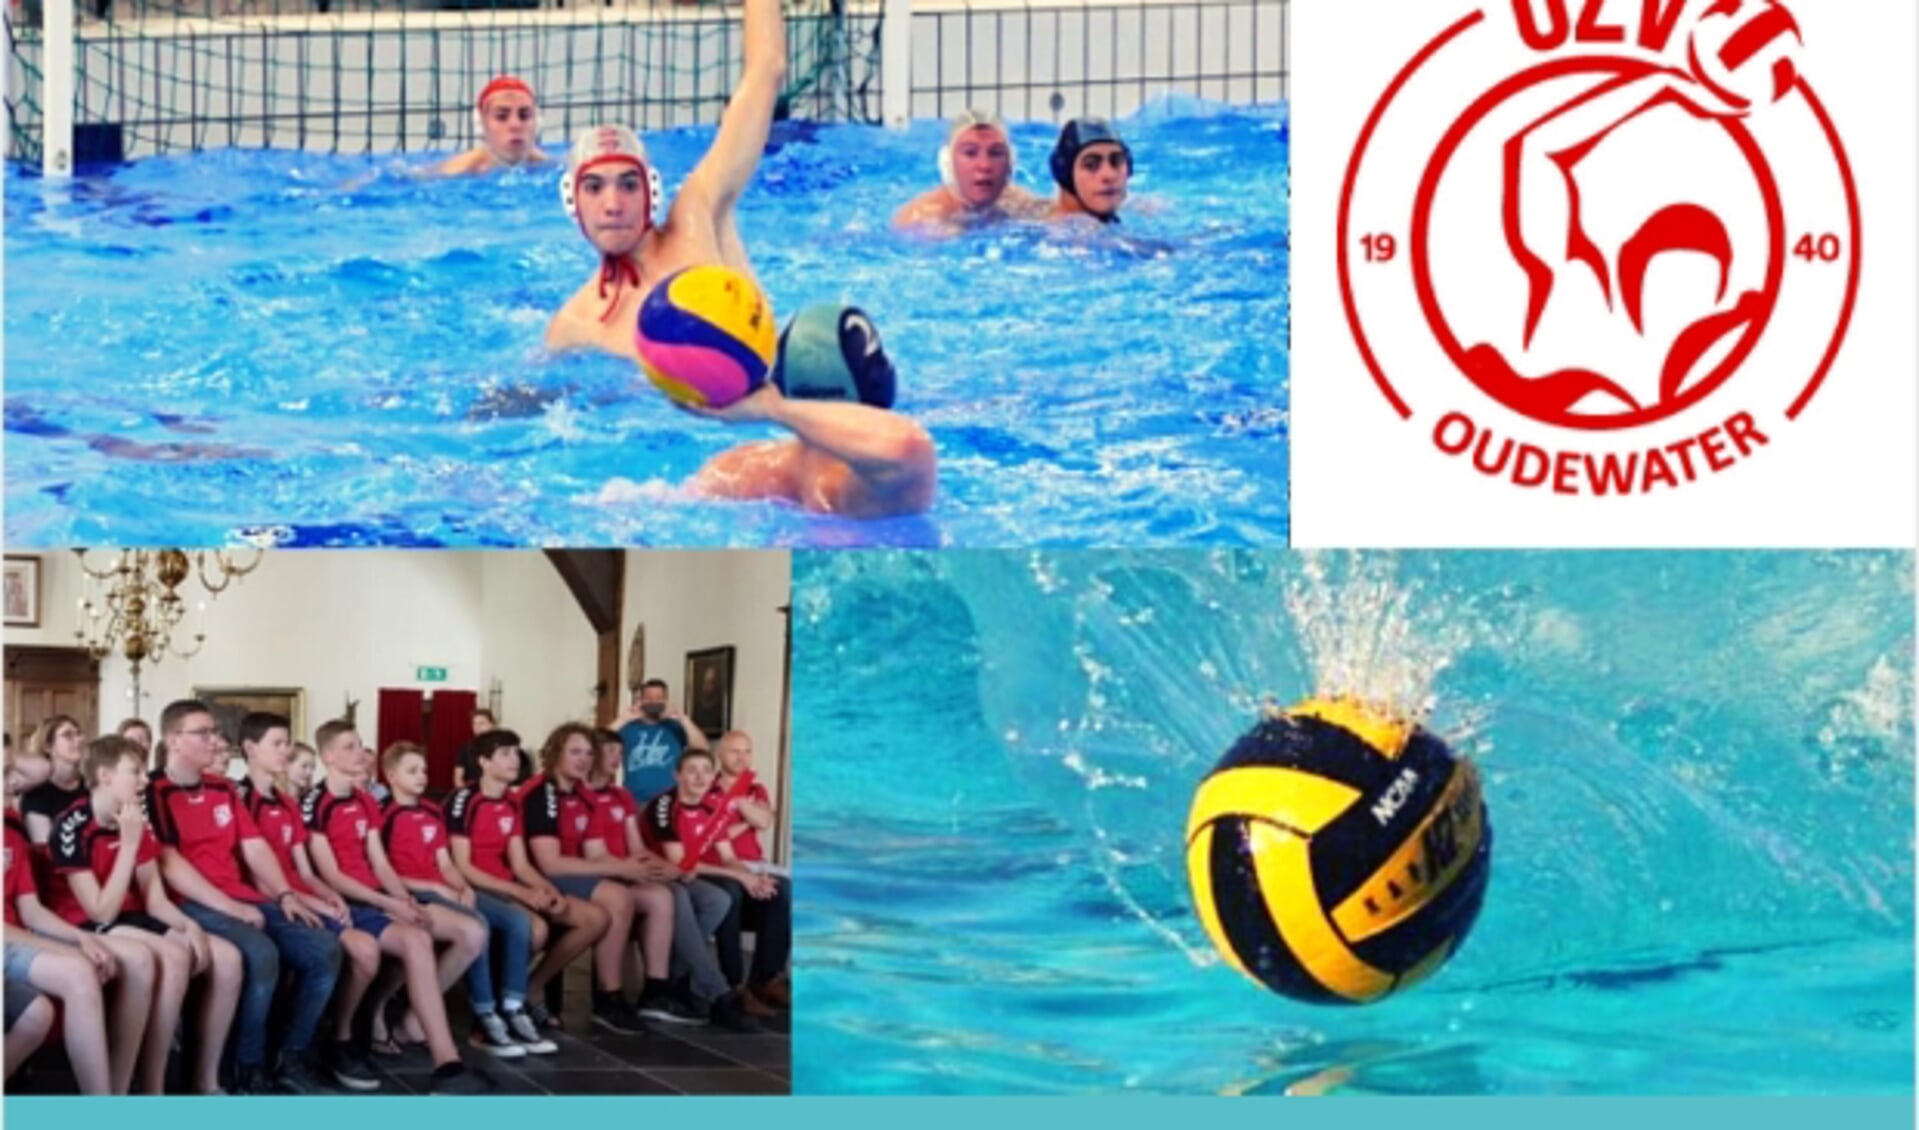 partijtje waterpolo, logo OZV, inhuldiging Bteam stadhuis in 2018